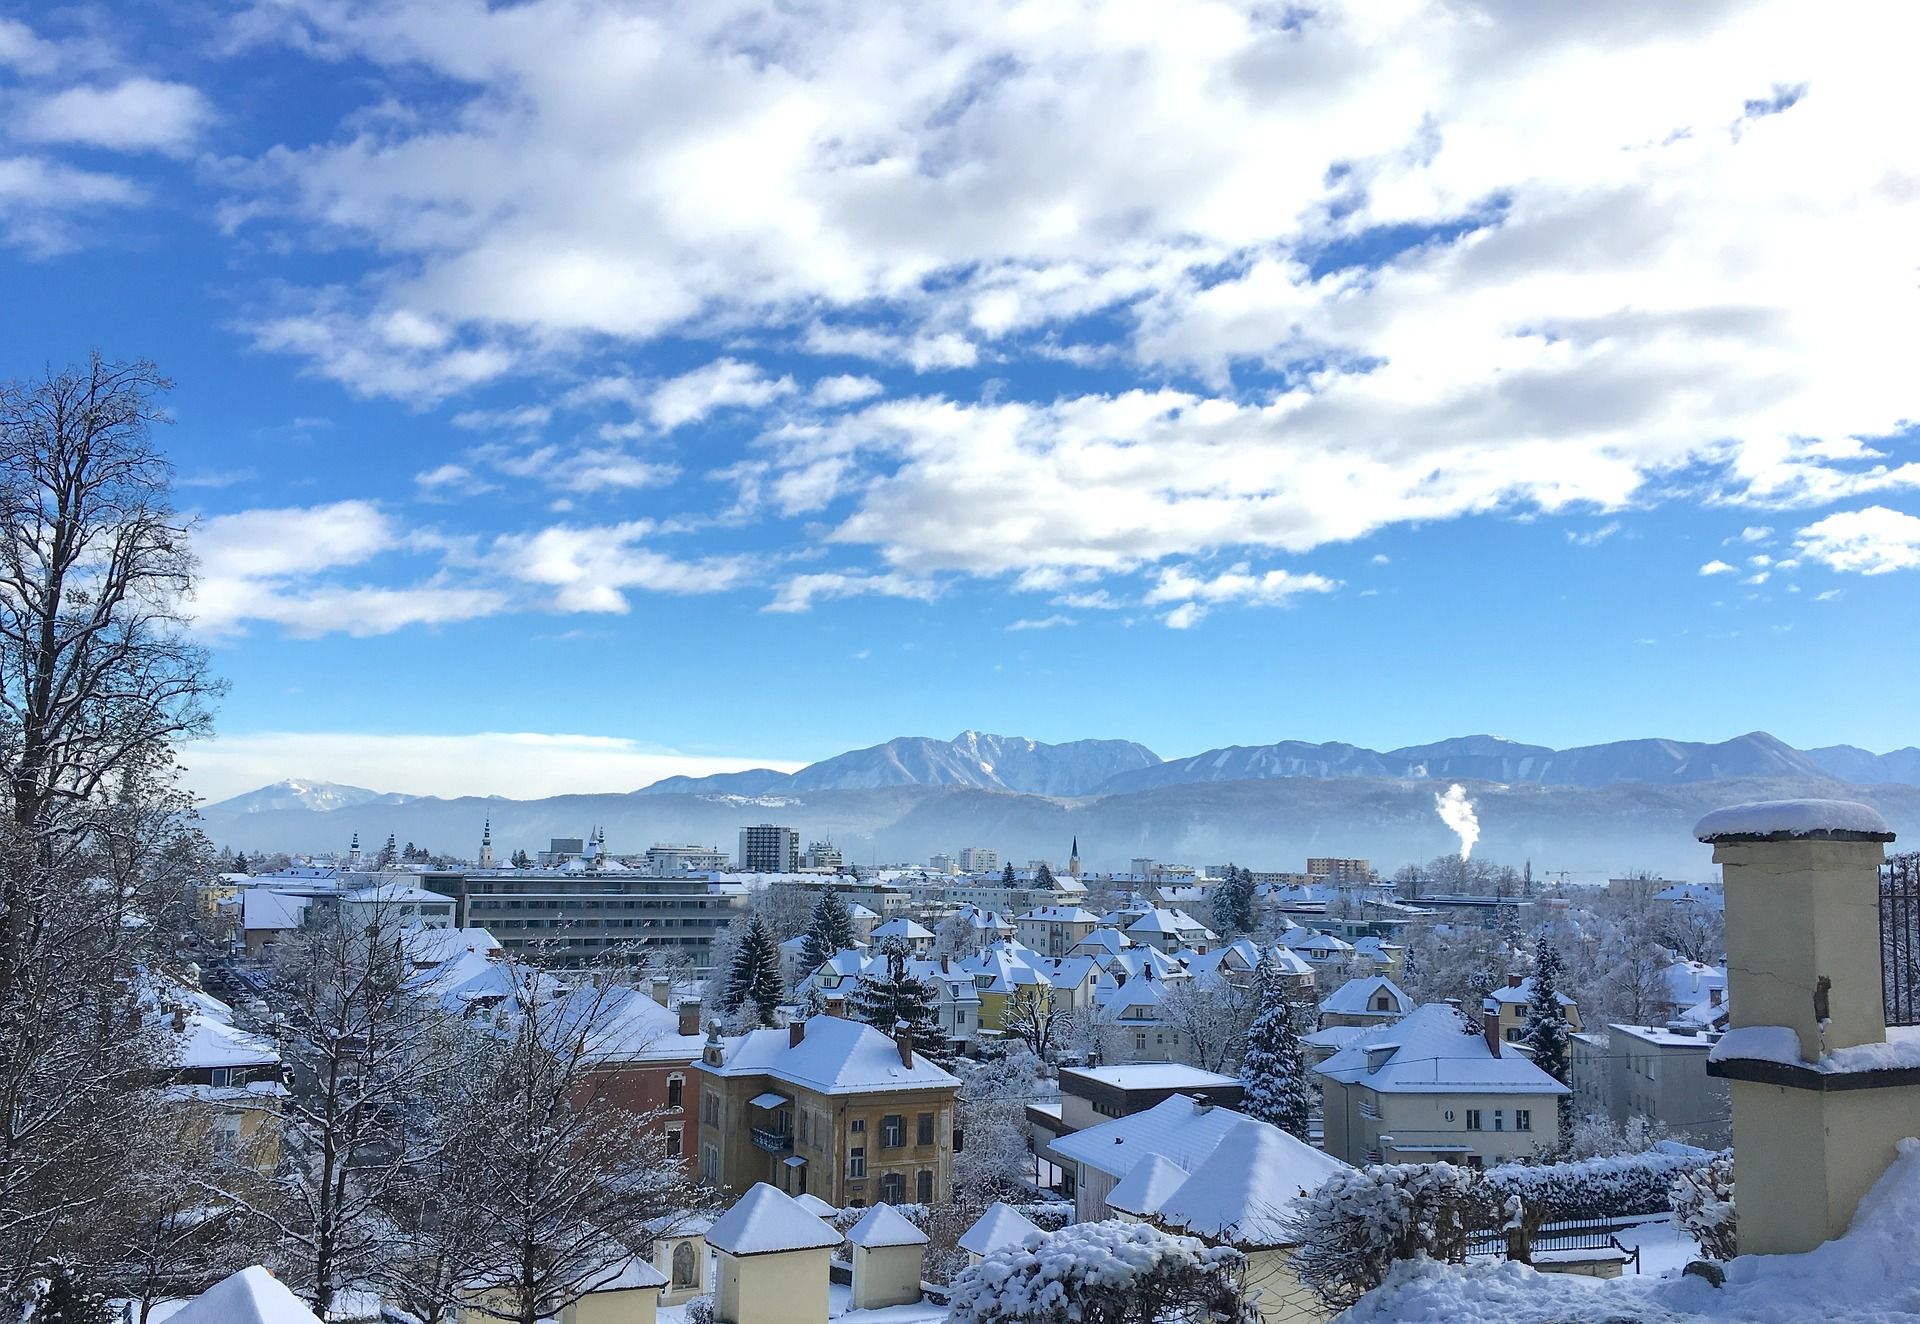 Stadt in Kärnten mit schneebedeckten Gebäuden